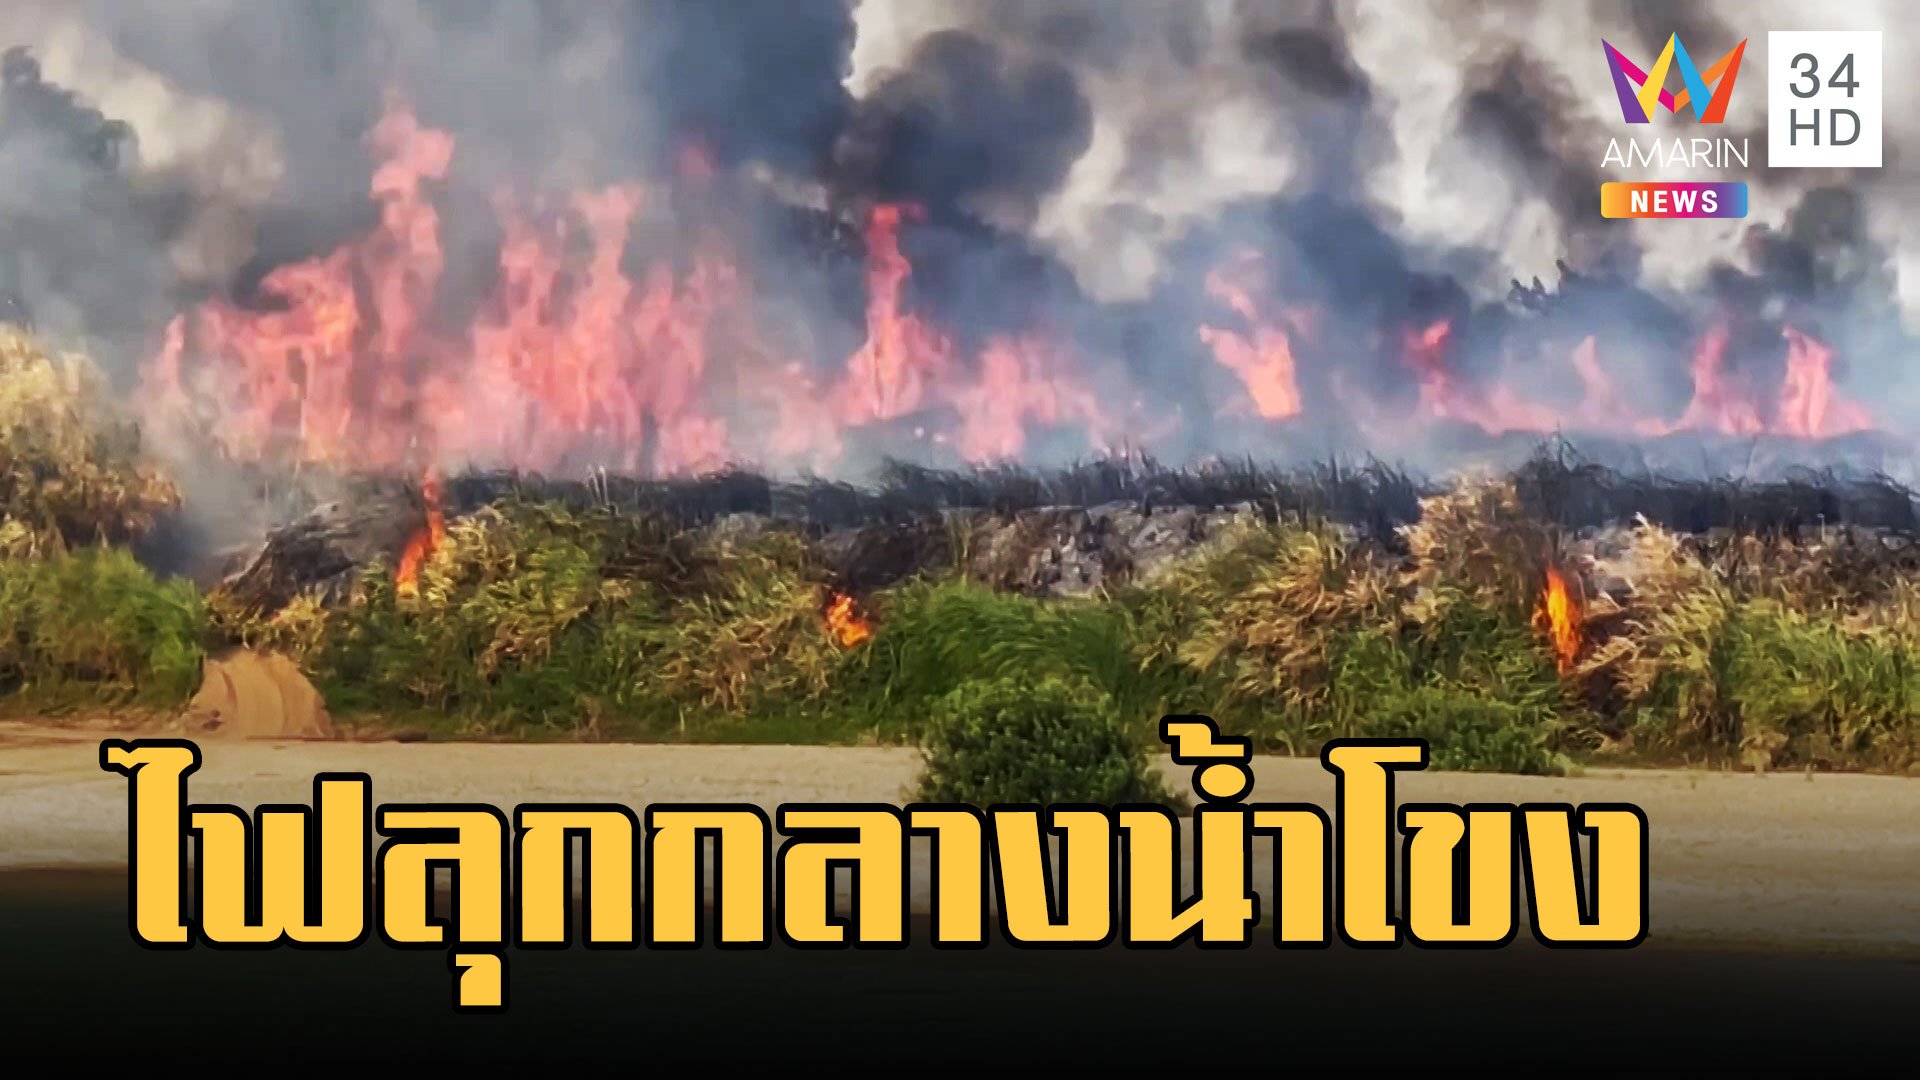 น้ำตาตก ไฟไหม้เกาะกลางแม่น้ำโขง ดับไม่ได้ พืชผลเกษตรวอด | ข่าวอรุณอมรินทร์ | 20 ก.พ. 66 | AMARIN TVHD34